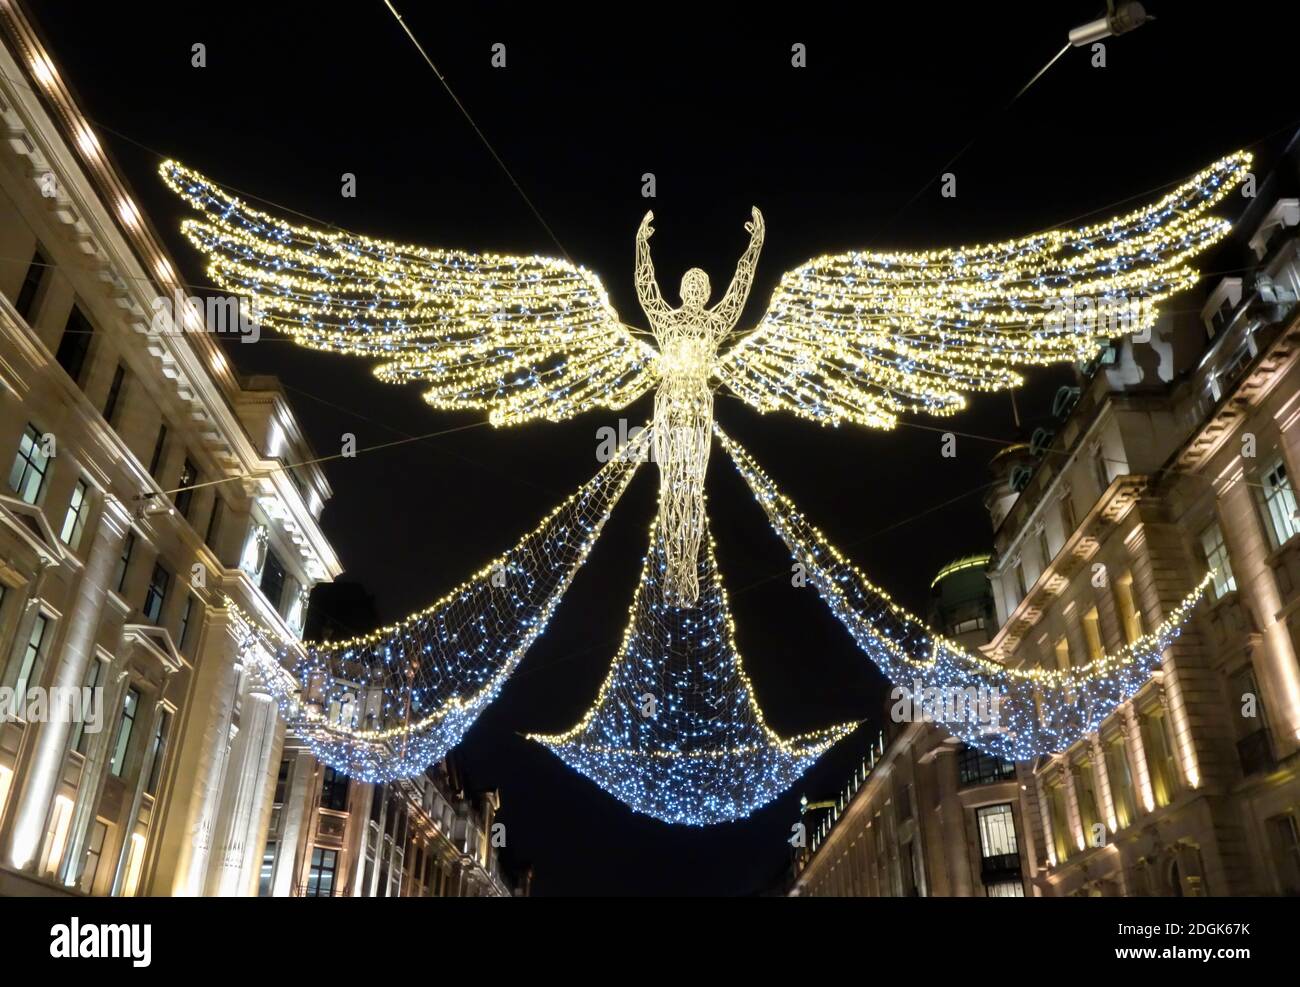 Regent Street Christmas Lights Display 2020 noto come "lo Spirito di Natale". Regent Street, centro di Londra, Regno Unito. Foto Stock